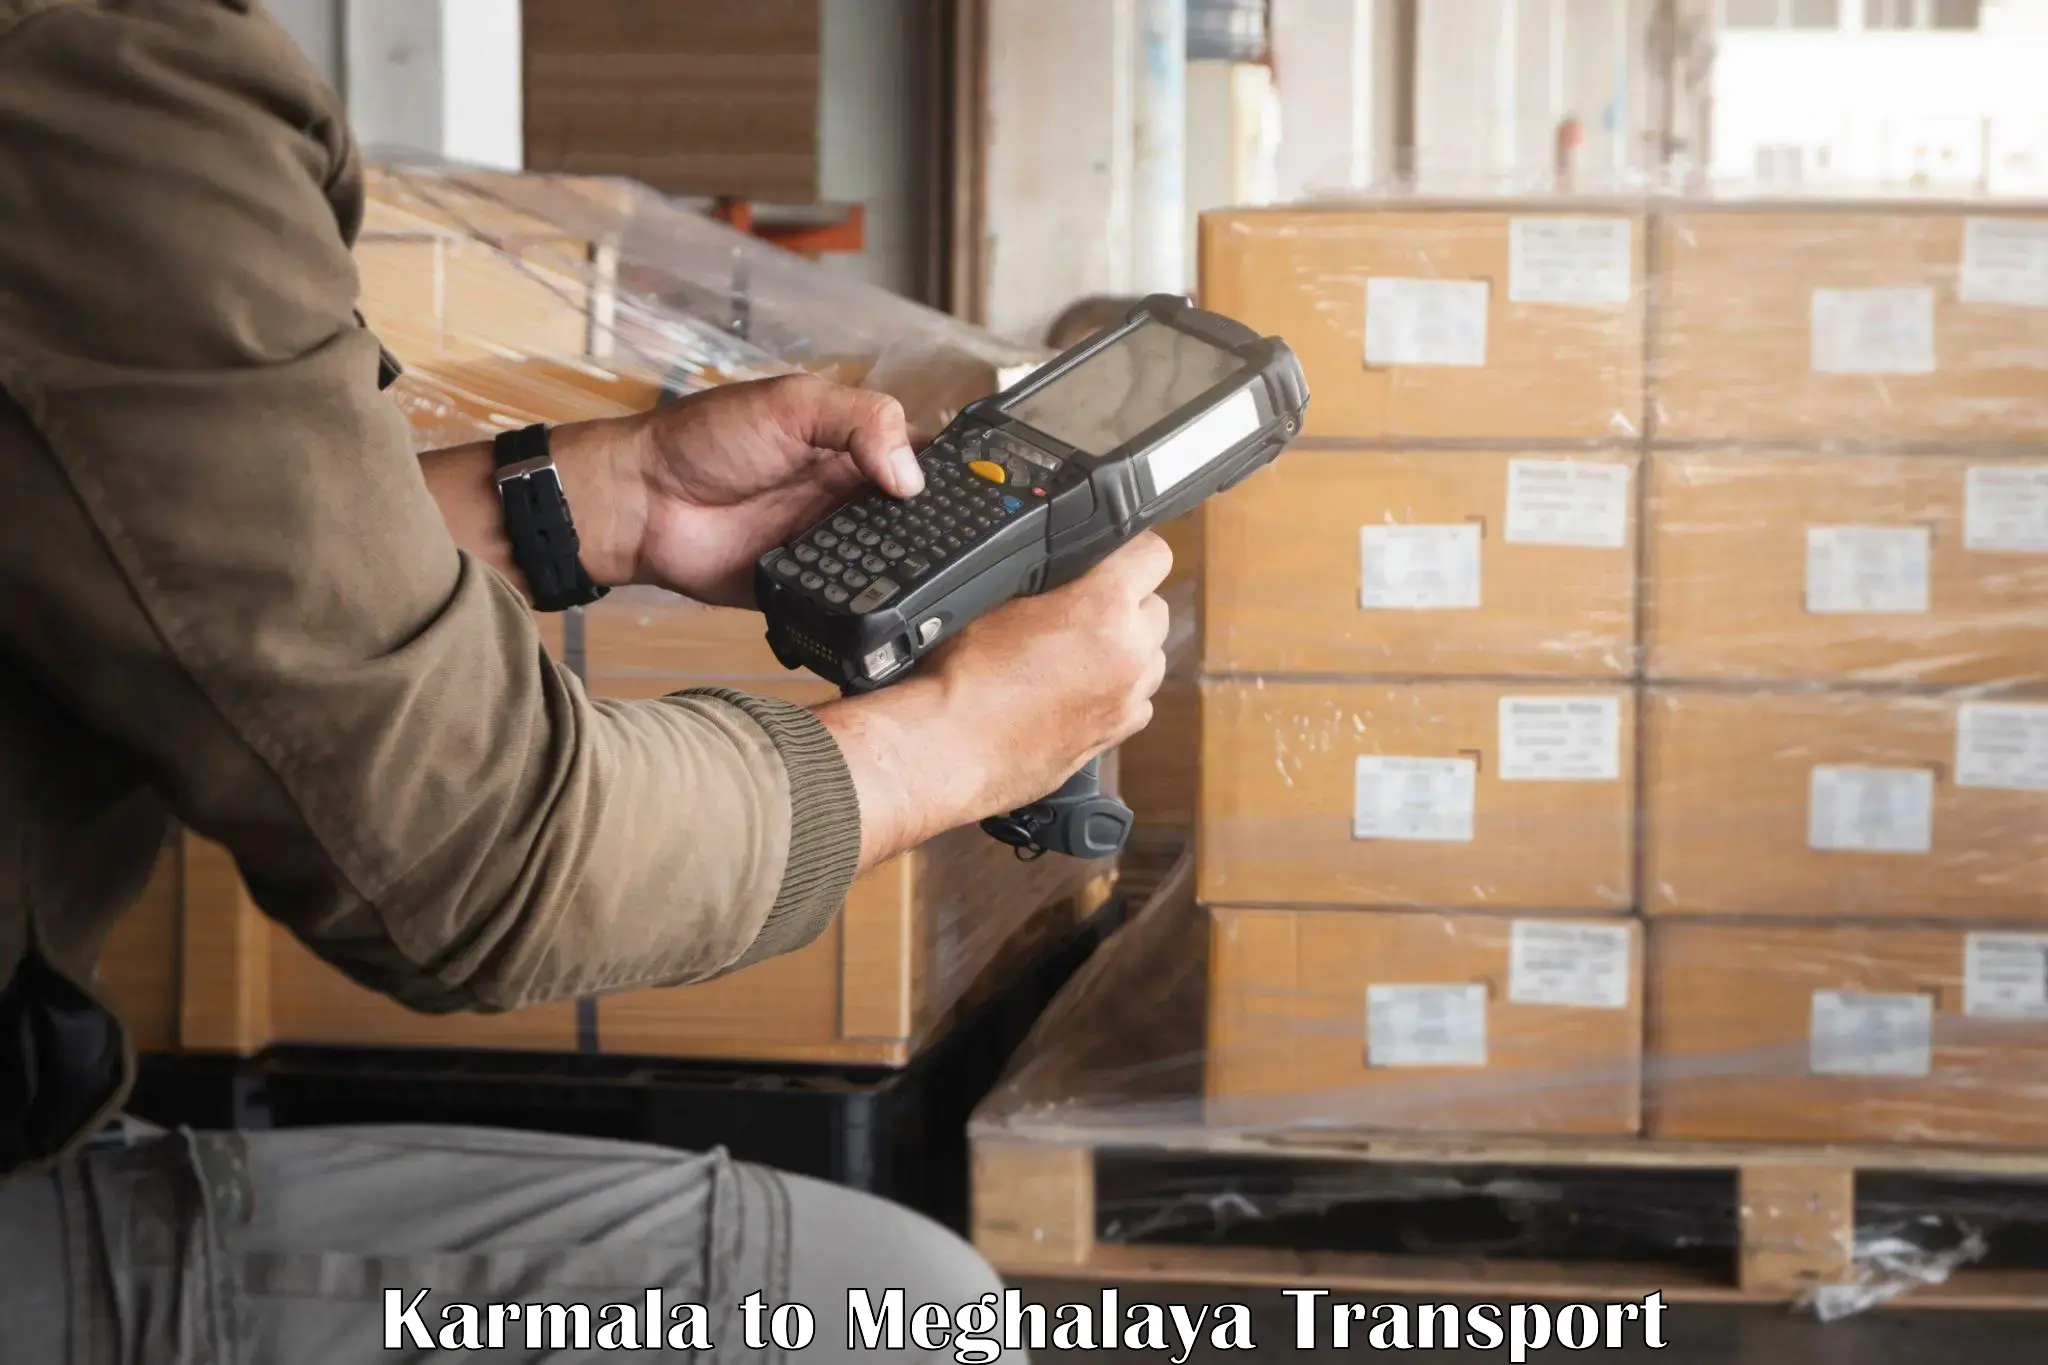 Nearest transport service Karmala to Meghalaya